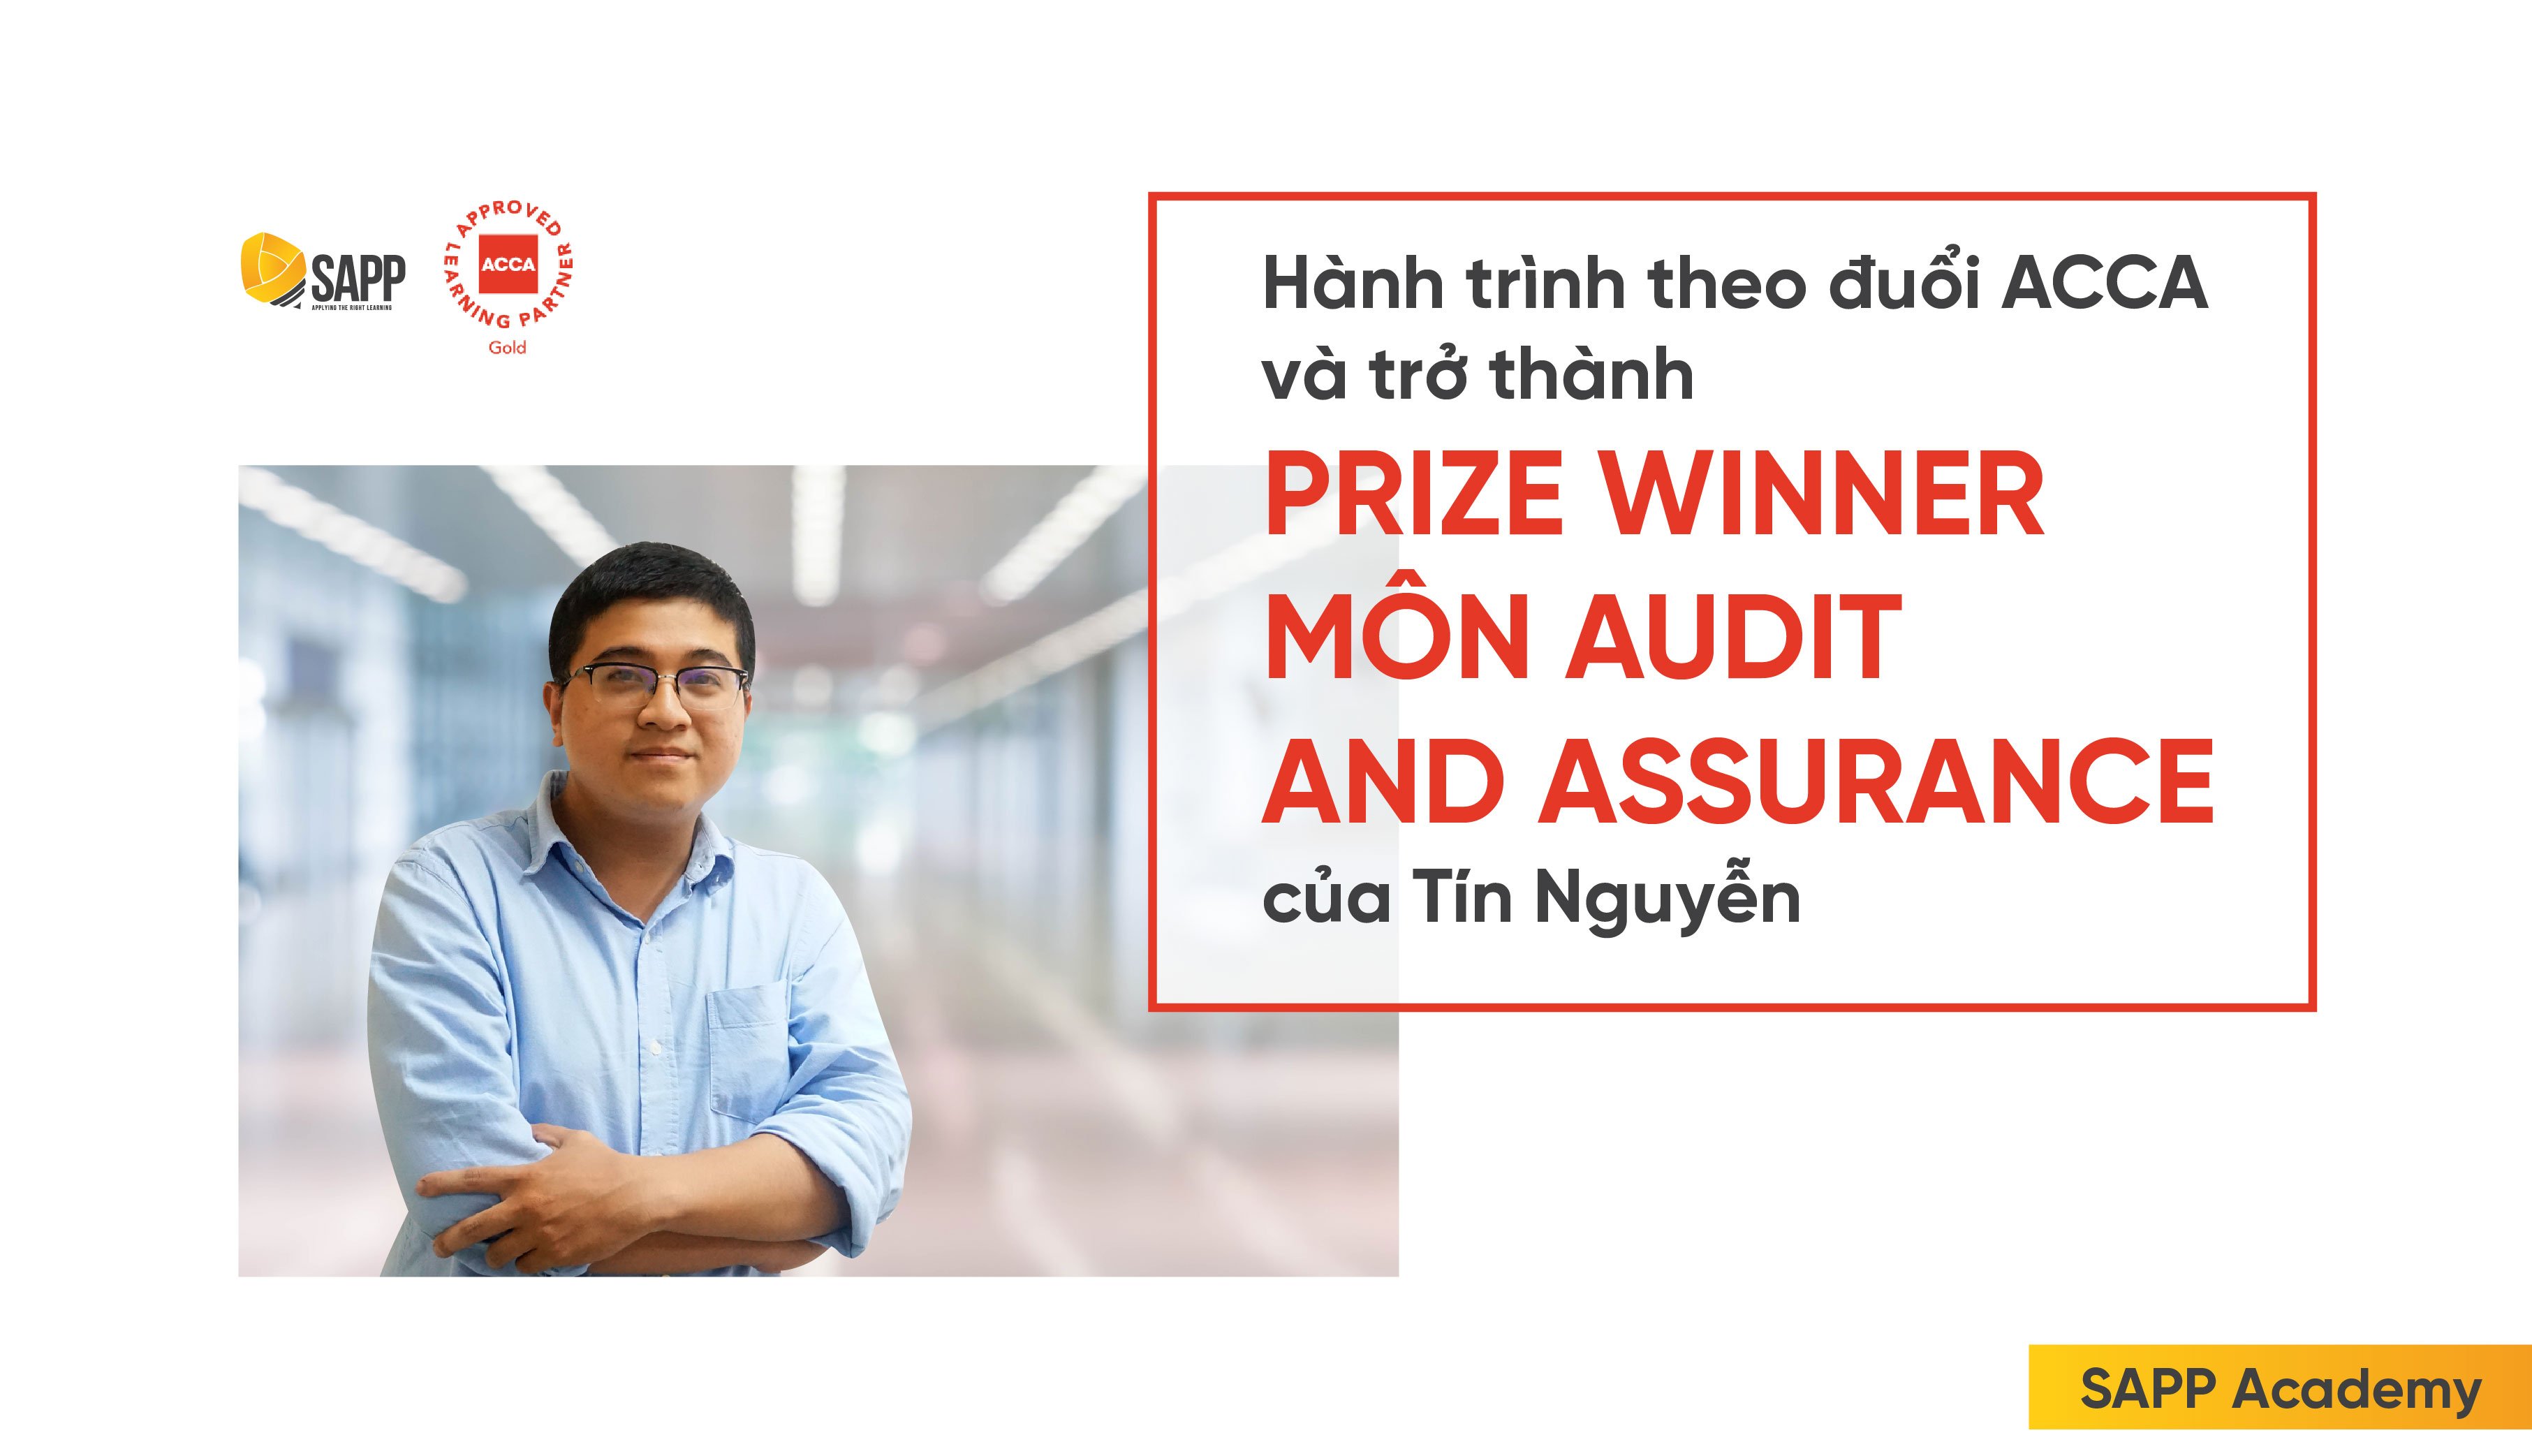 Hành trình chinh phục ACCA và trở thành Prize Winner môn Audit & Assurance của Tín Nguyễn